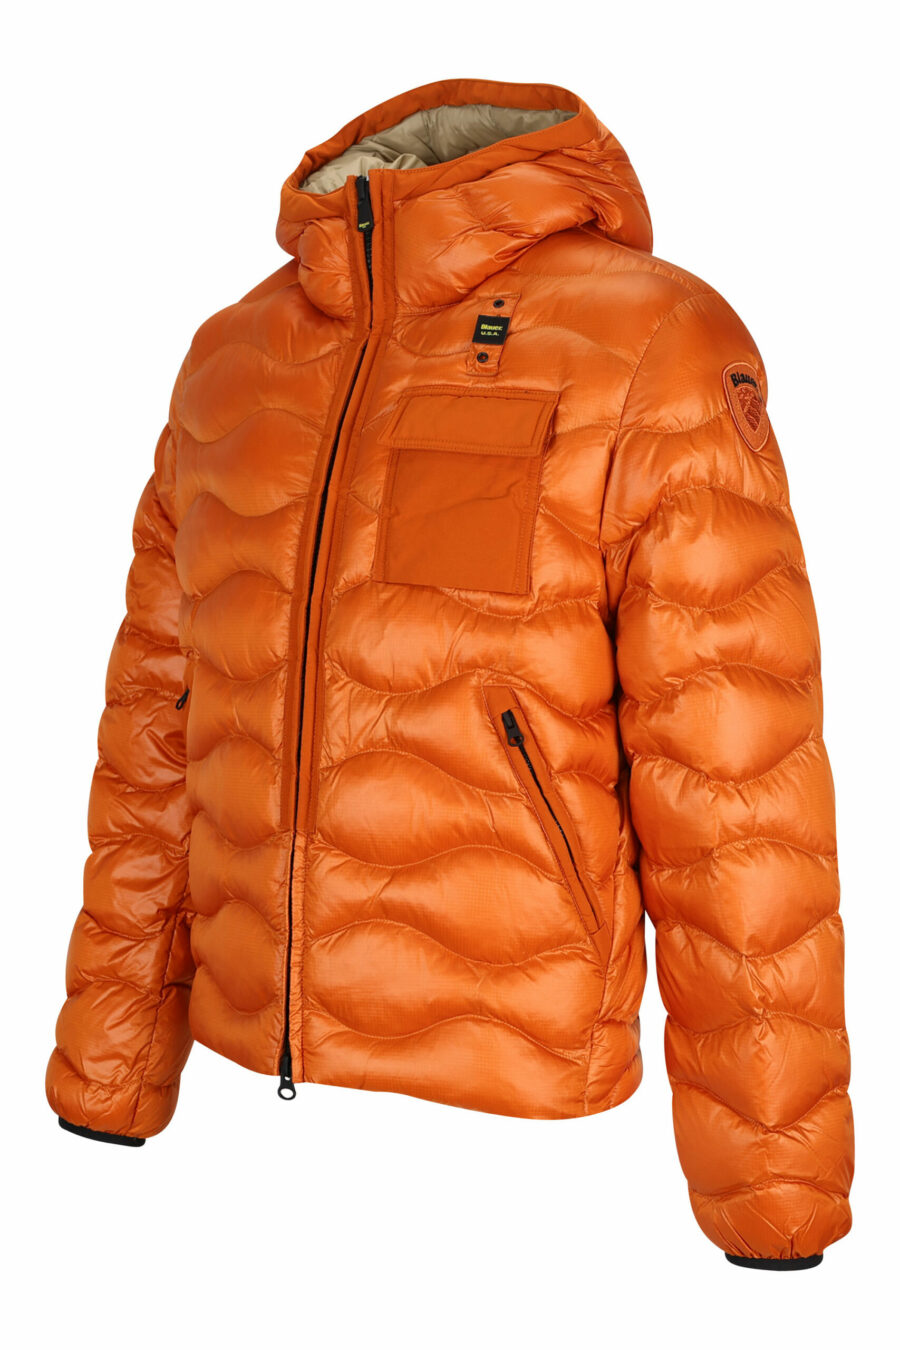 Veste à capuche orange avec lignes ondulées et doublure beige - 8058610697631 à l'échelle 1